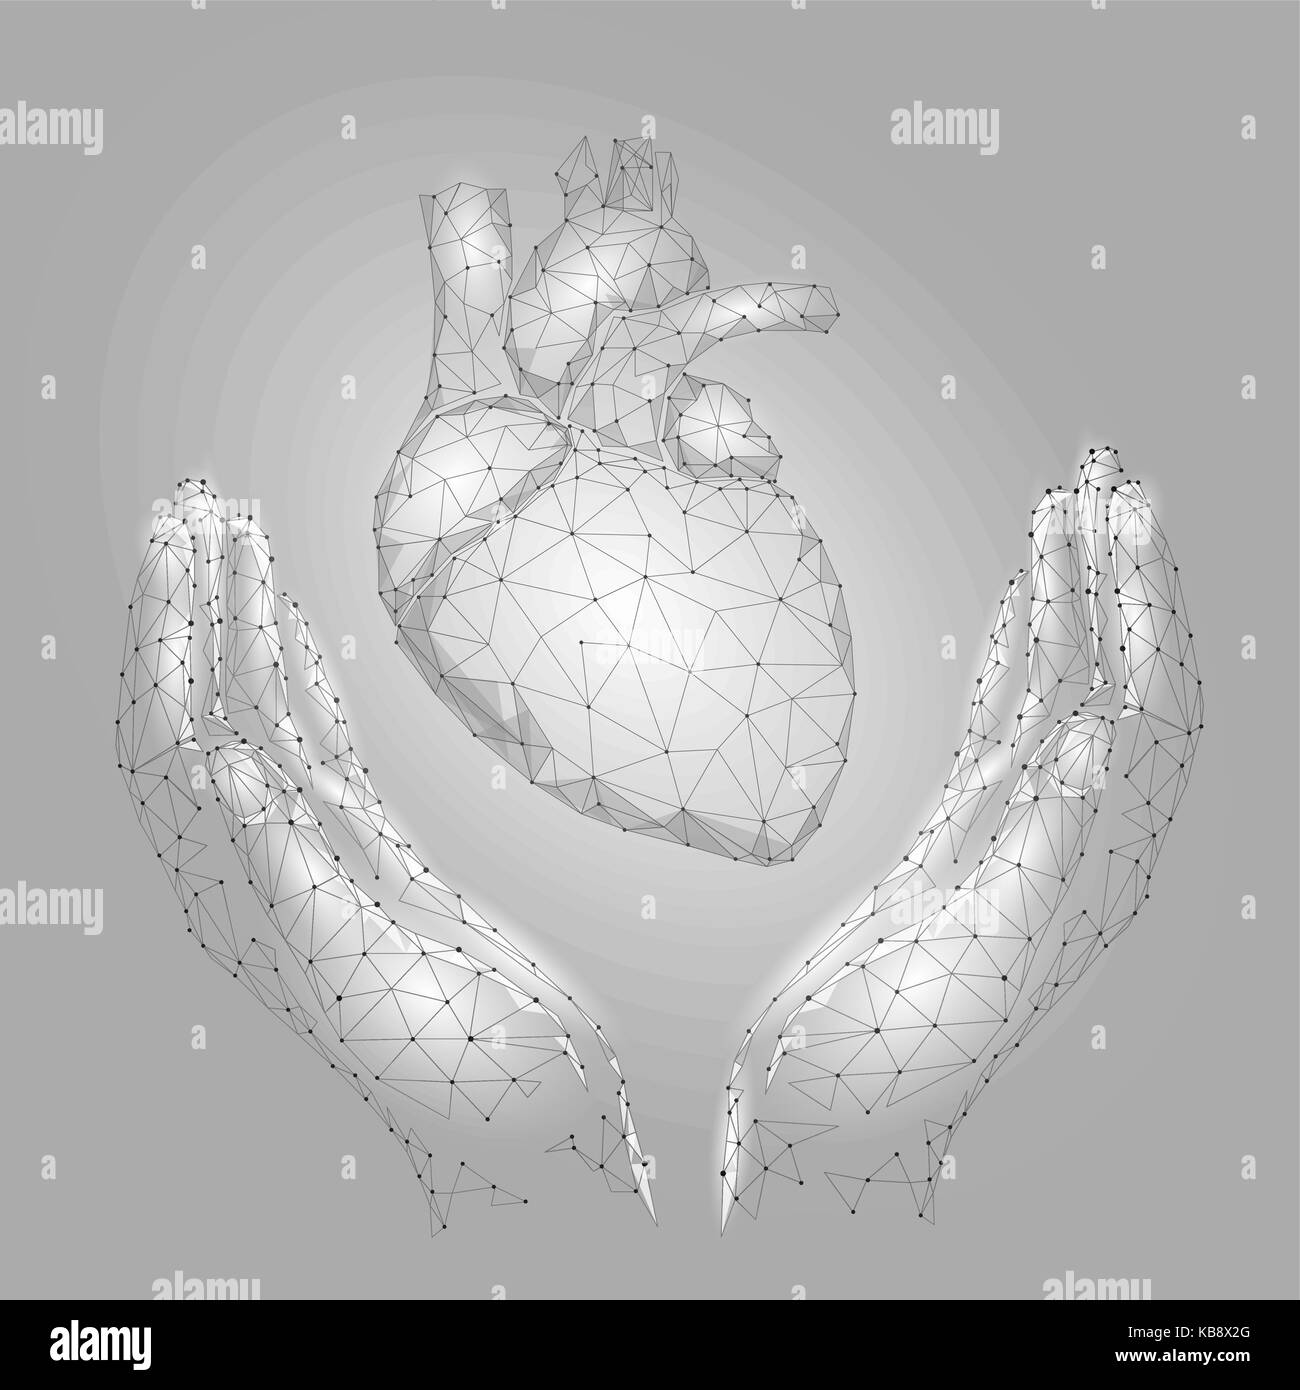 Hände, die Unterstützung der menschlichen Herzen. Medizin Kardiologie Gesundheit Hilfe Mann Konzept. Low Poly Grau Weiß verbunden dots Dreieck Zukunft Technik Design Hintergrund Vector Illustration Stock Vektor